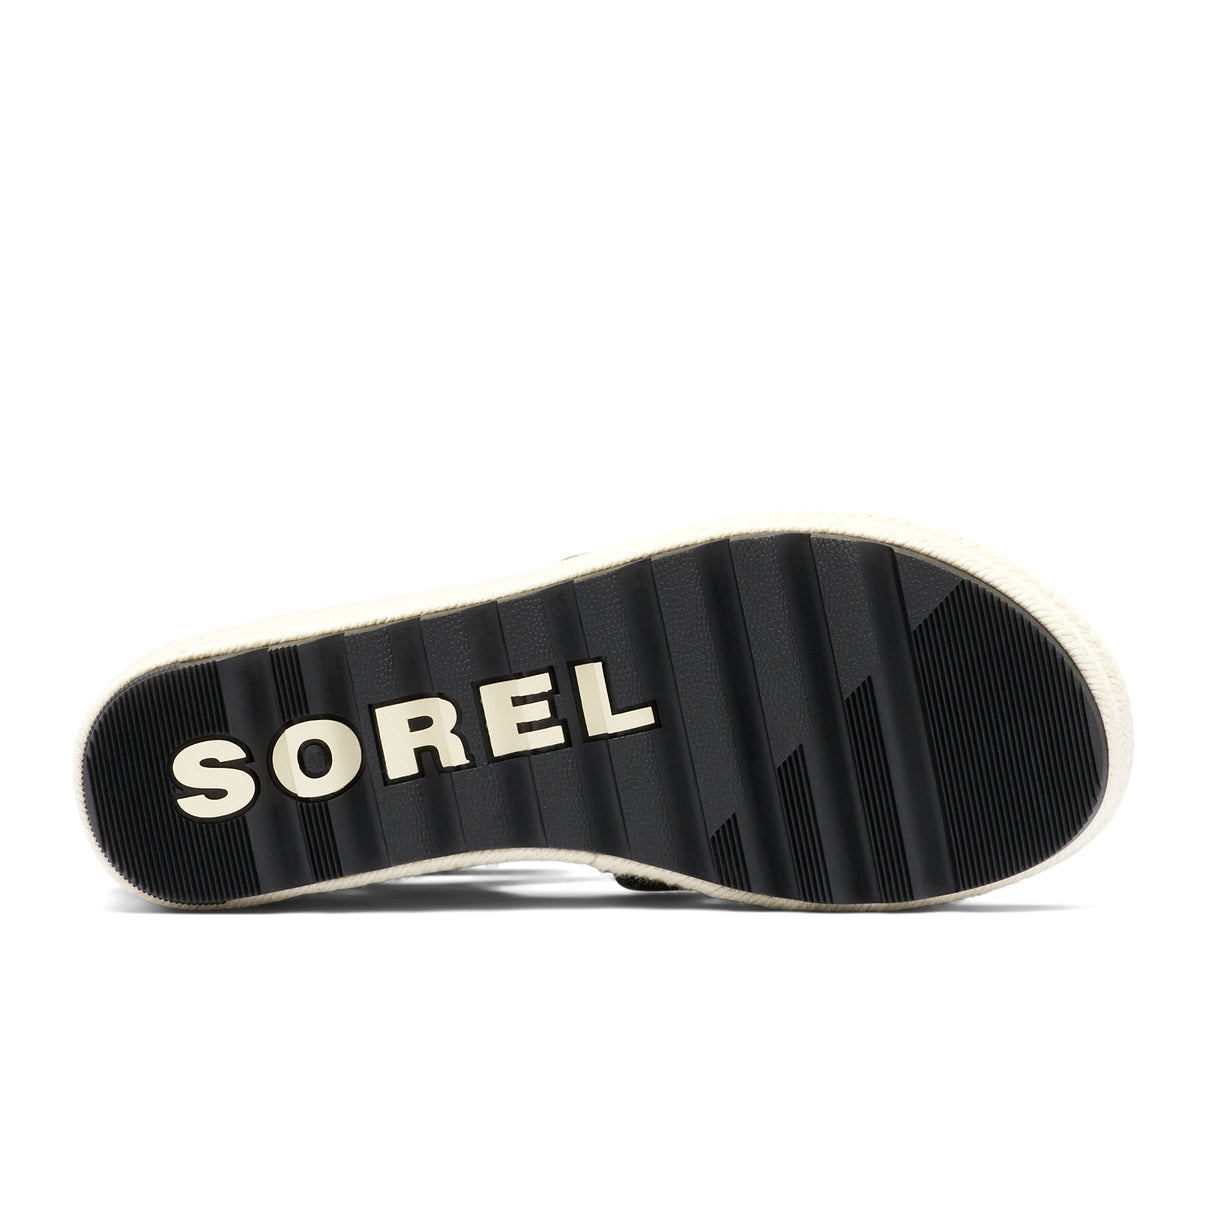 Sorel Women's Cameron Multi Strap Wedge Sandal - Black/Chalk